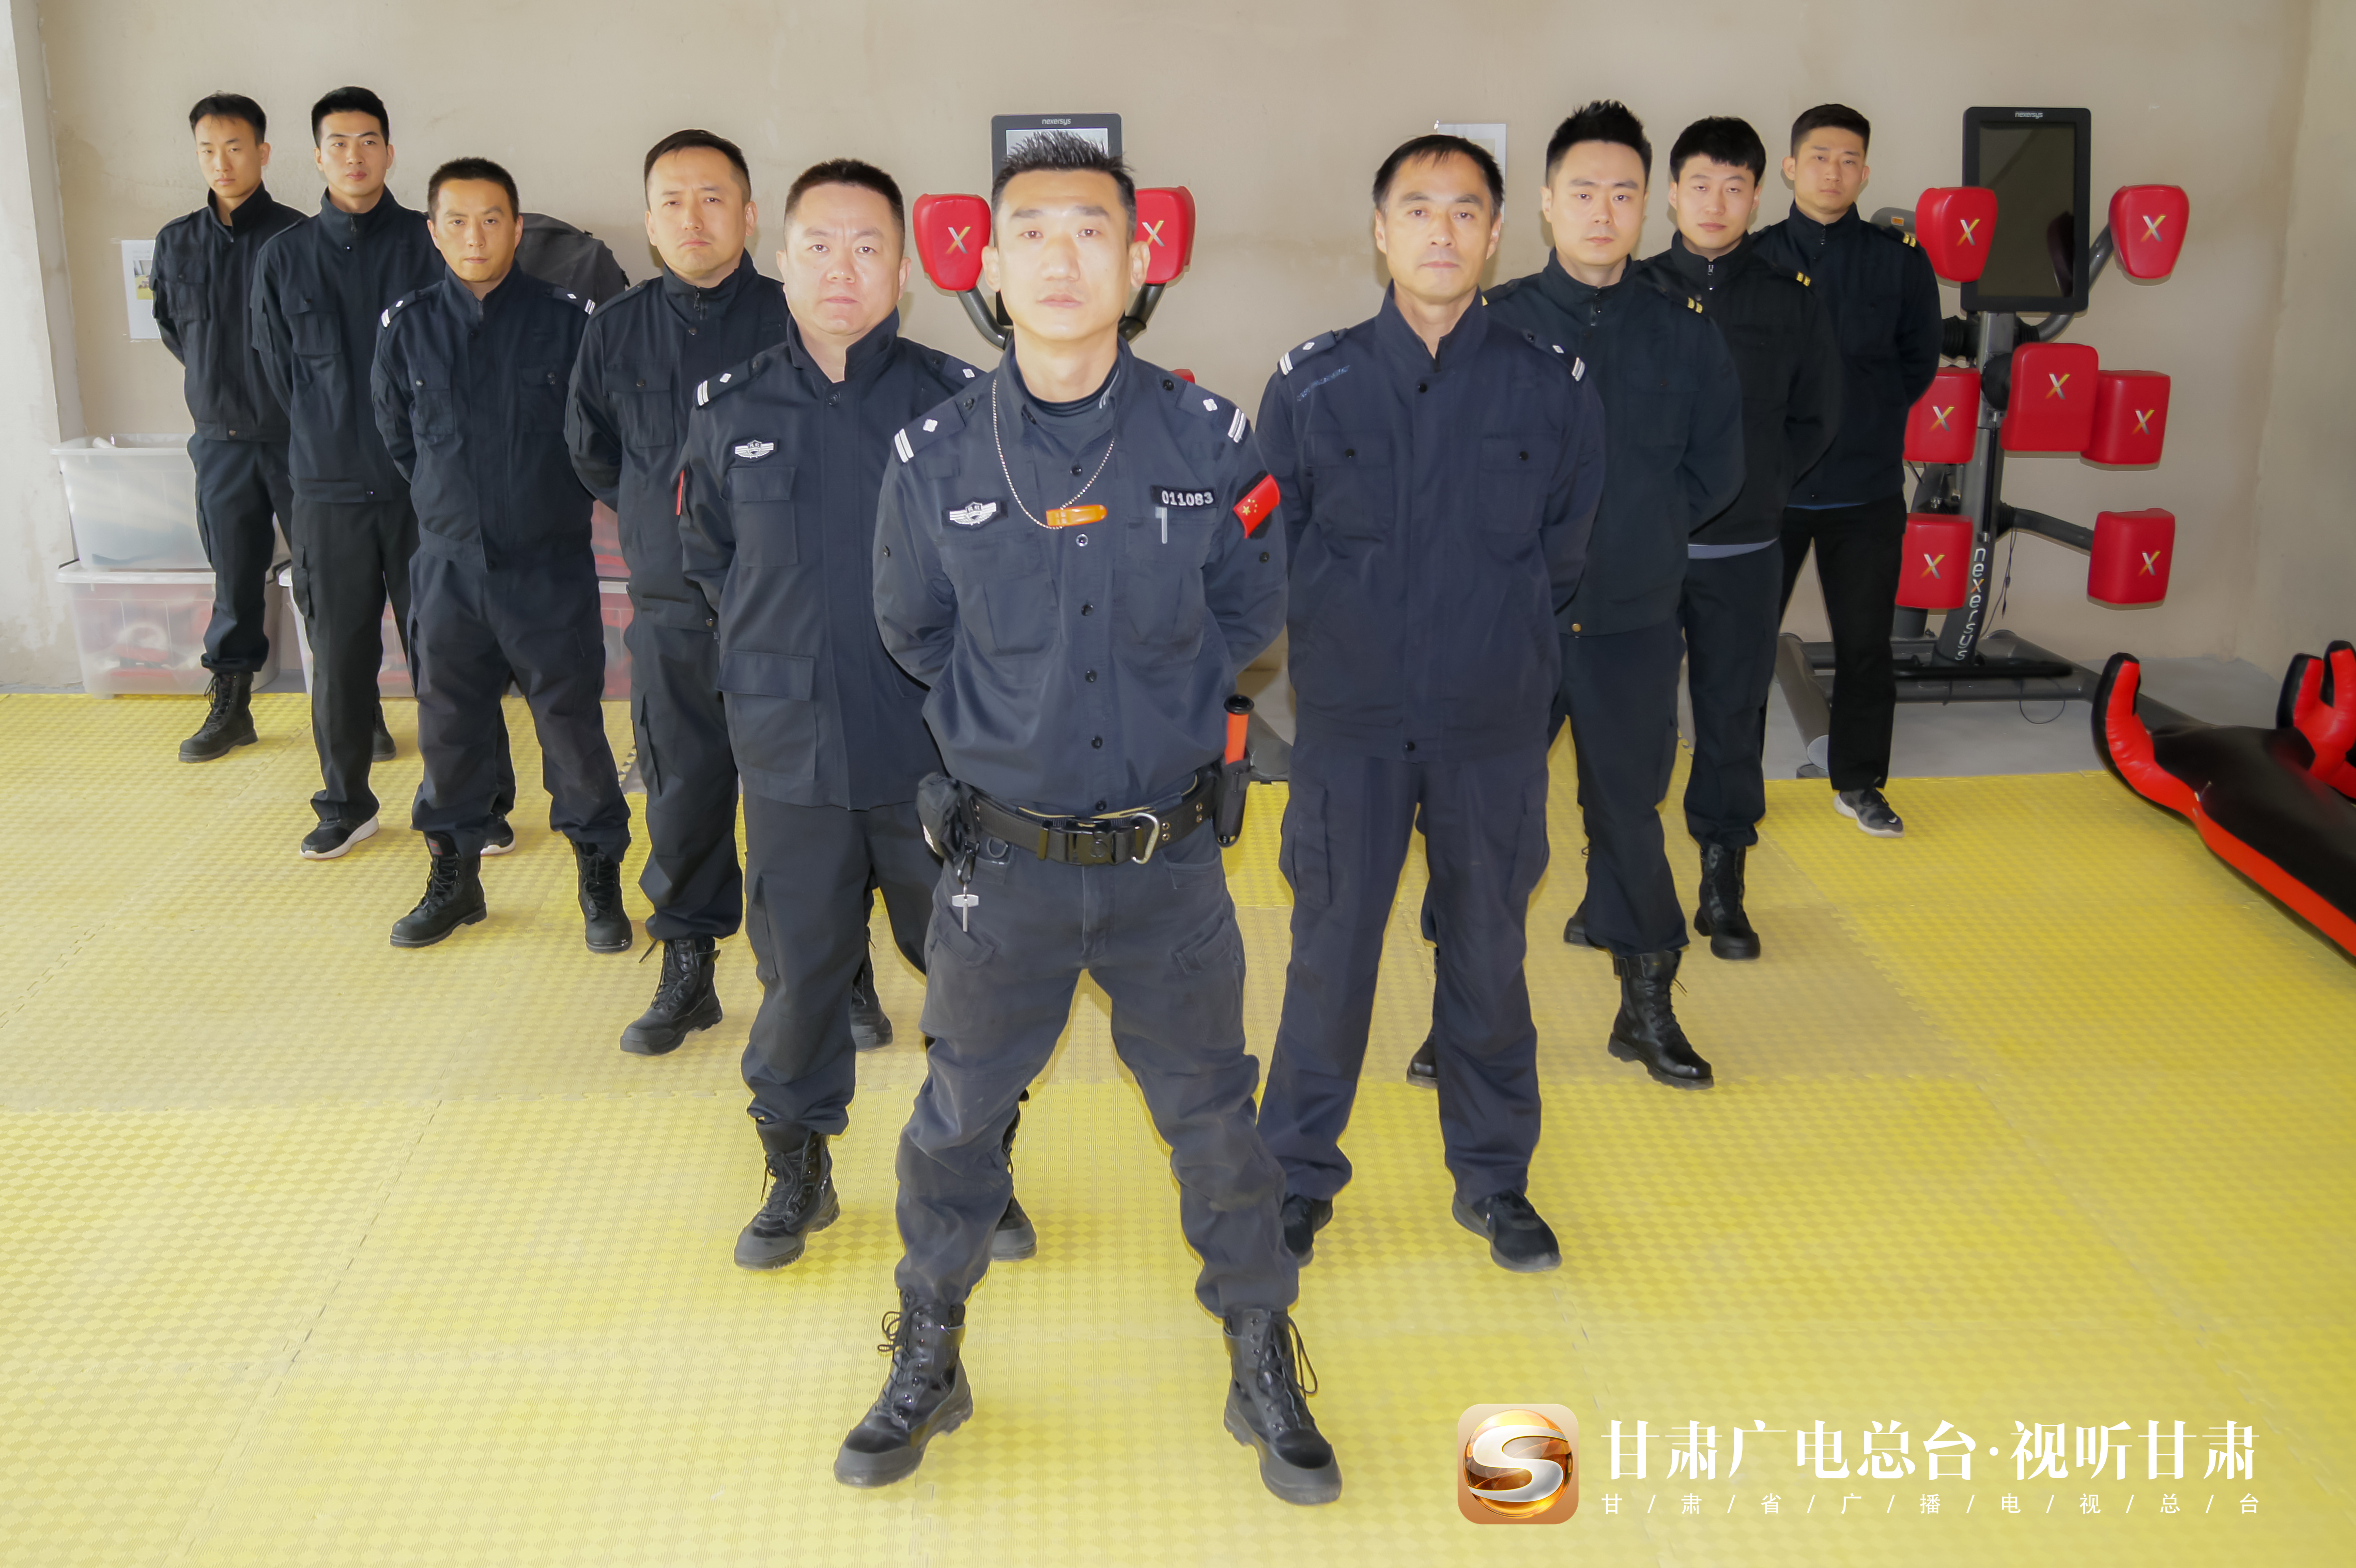 苦练基本技能守护航空安全东航甘肃分公司完成空中保卫教员提升考核